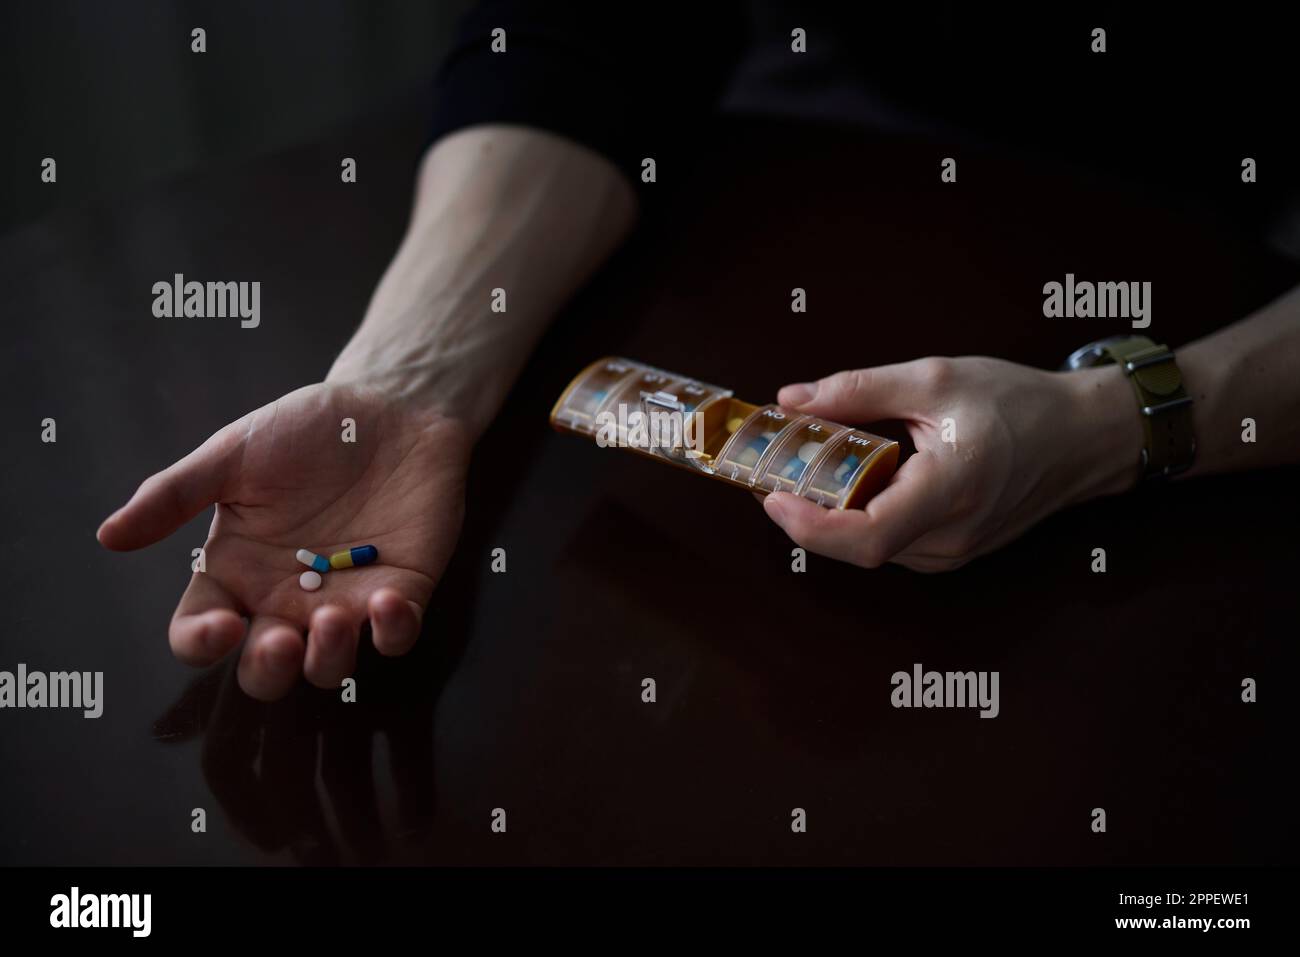 Frauenhände halten Box mit Pillen Stockfoto